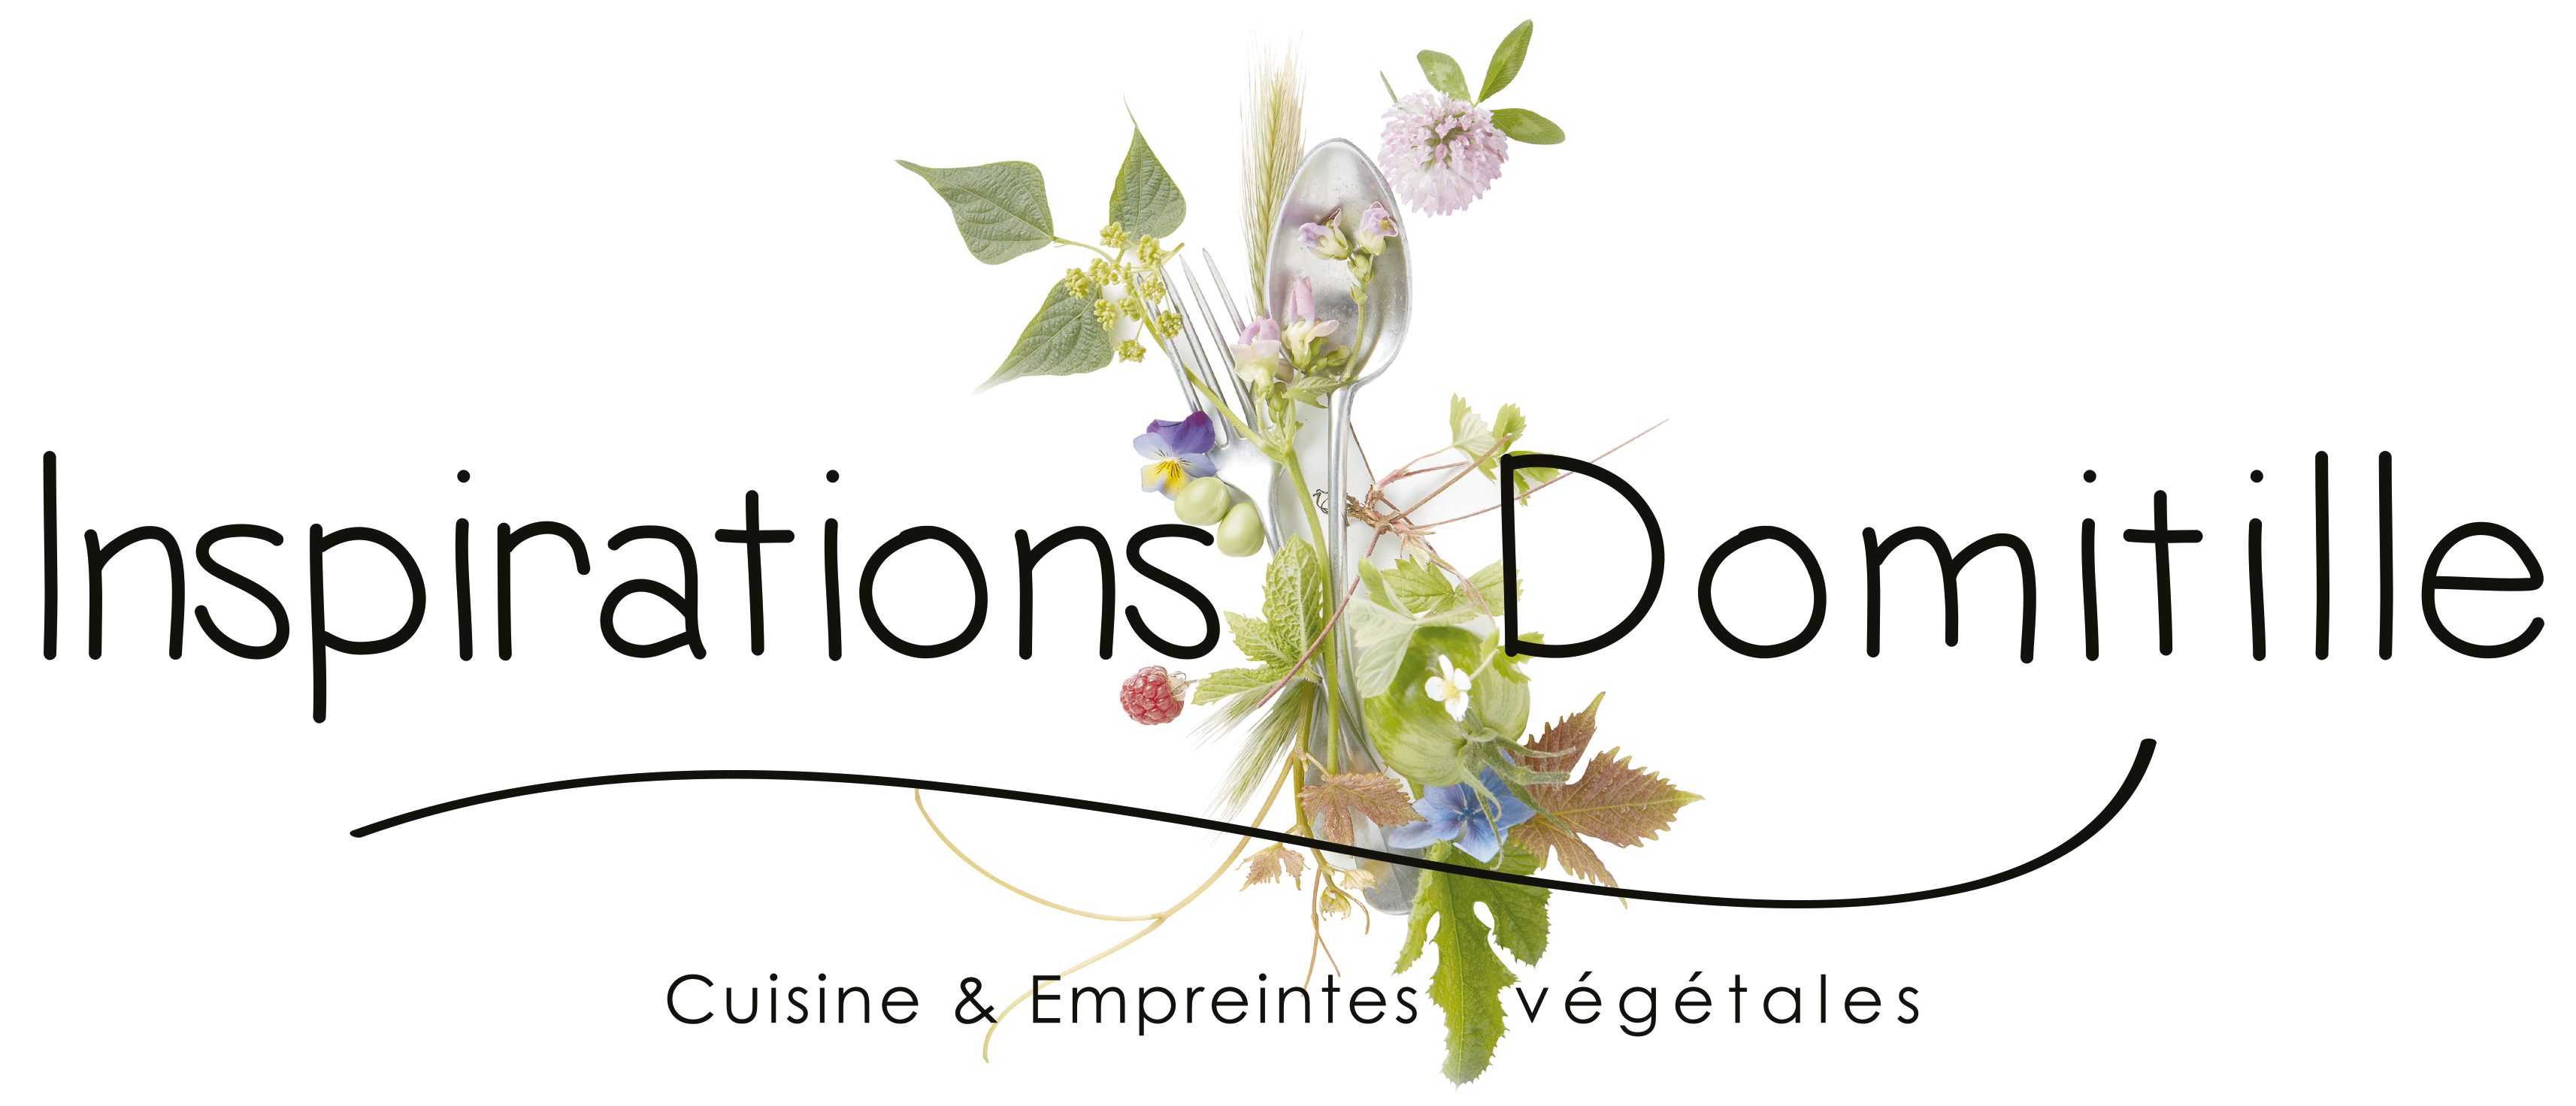 Inspirations Domitille – Cuisine & Empreintes végétales